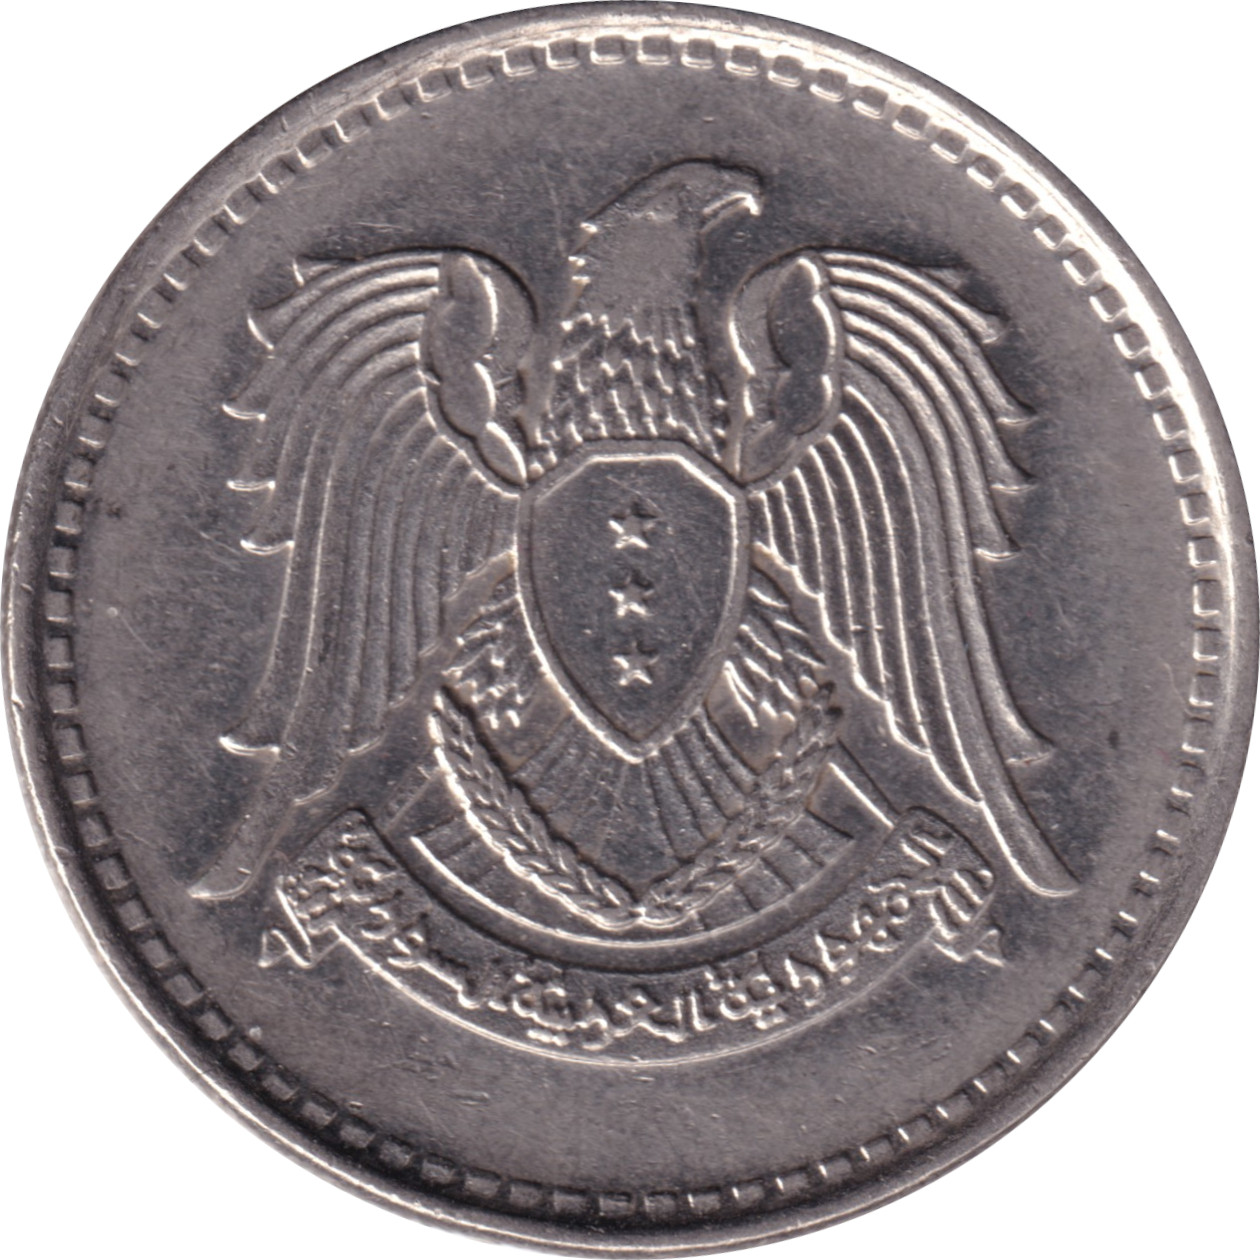 1 pound - République arabe - Type 1